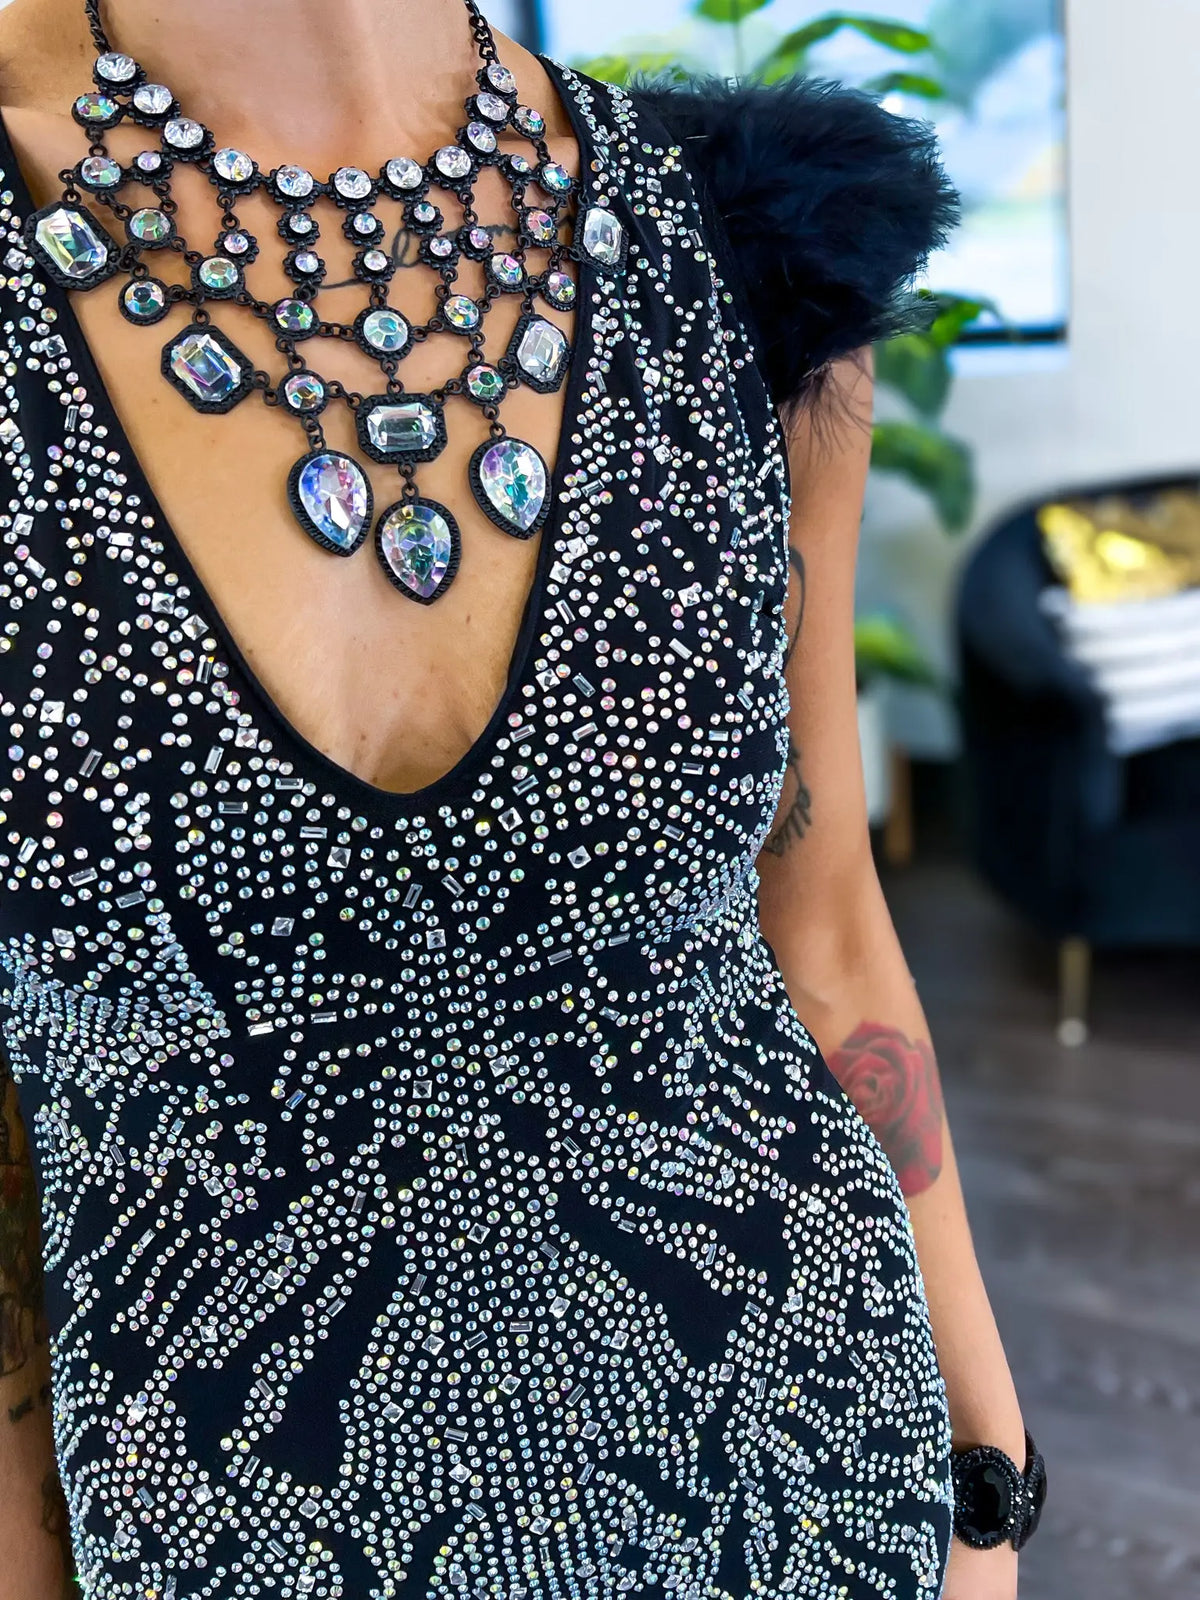 Rhinestone Feather Bodycon Dress | Black Banjul